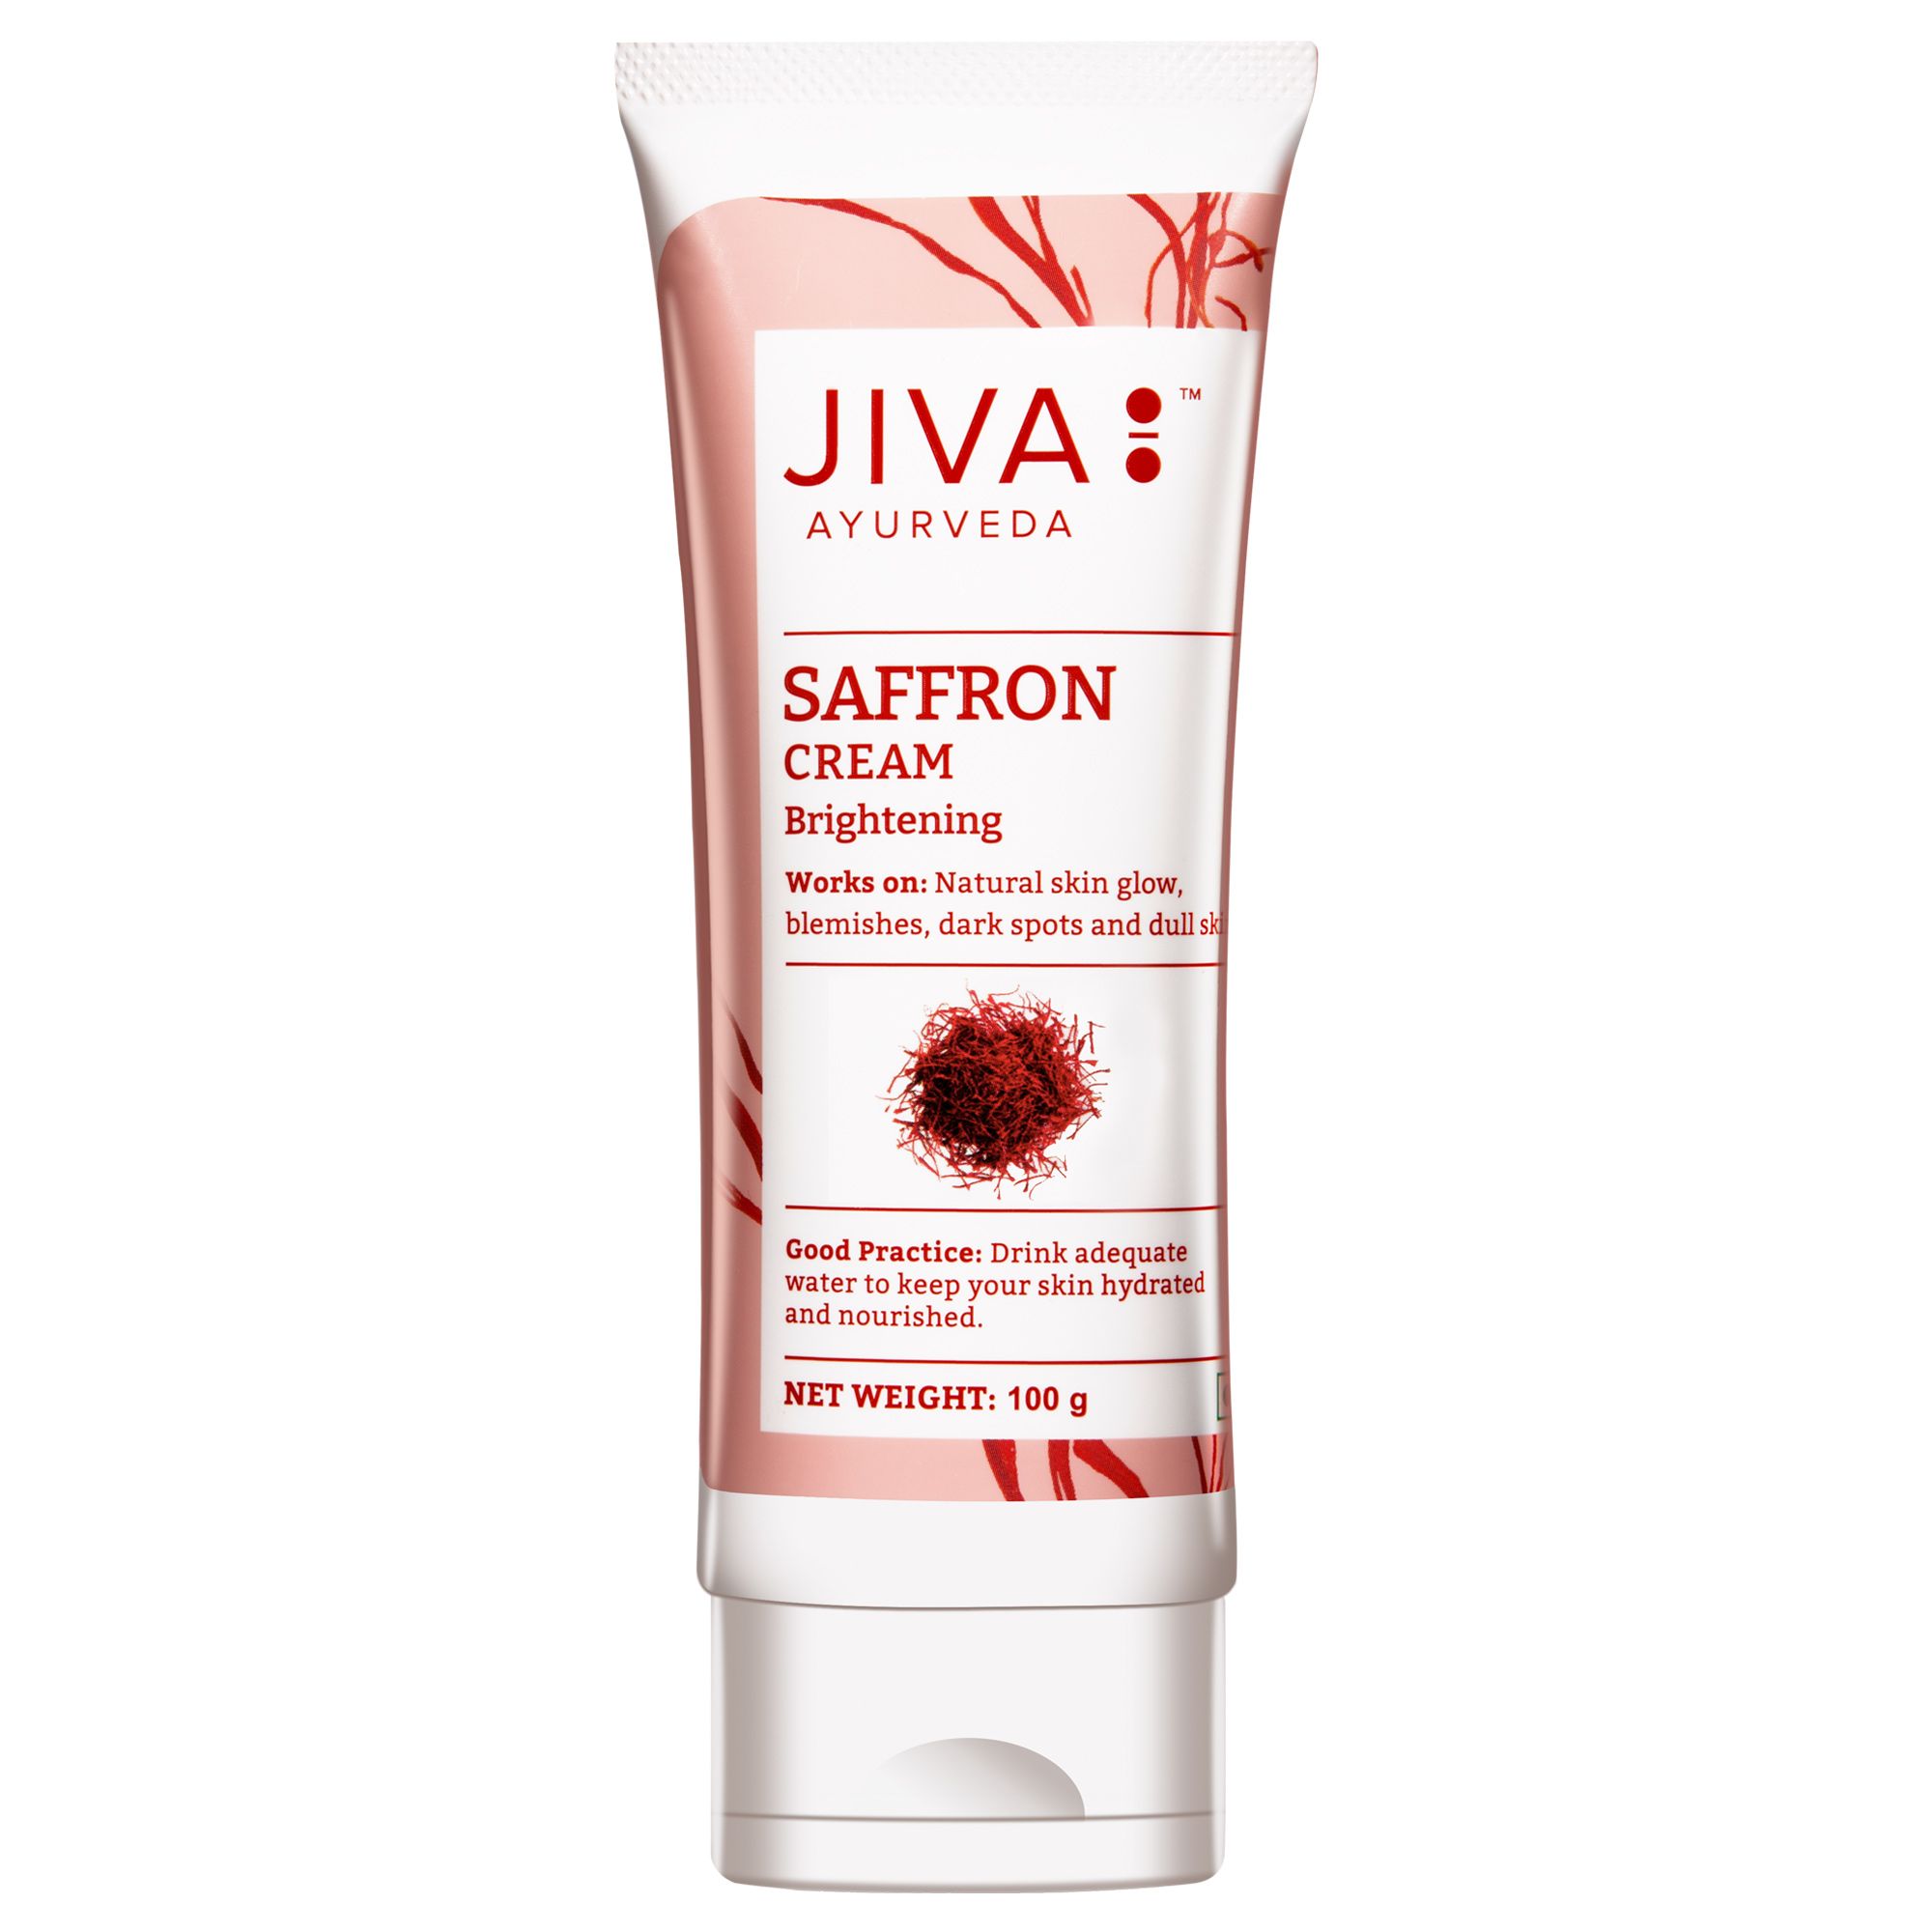 Buy Jiva Ayurveda Saffron Cream at Best Price Online